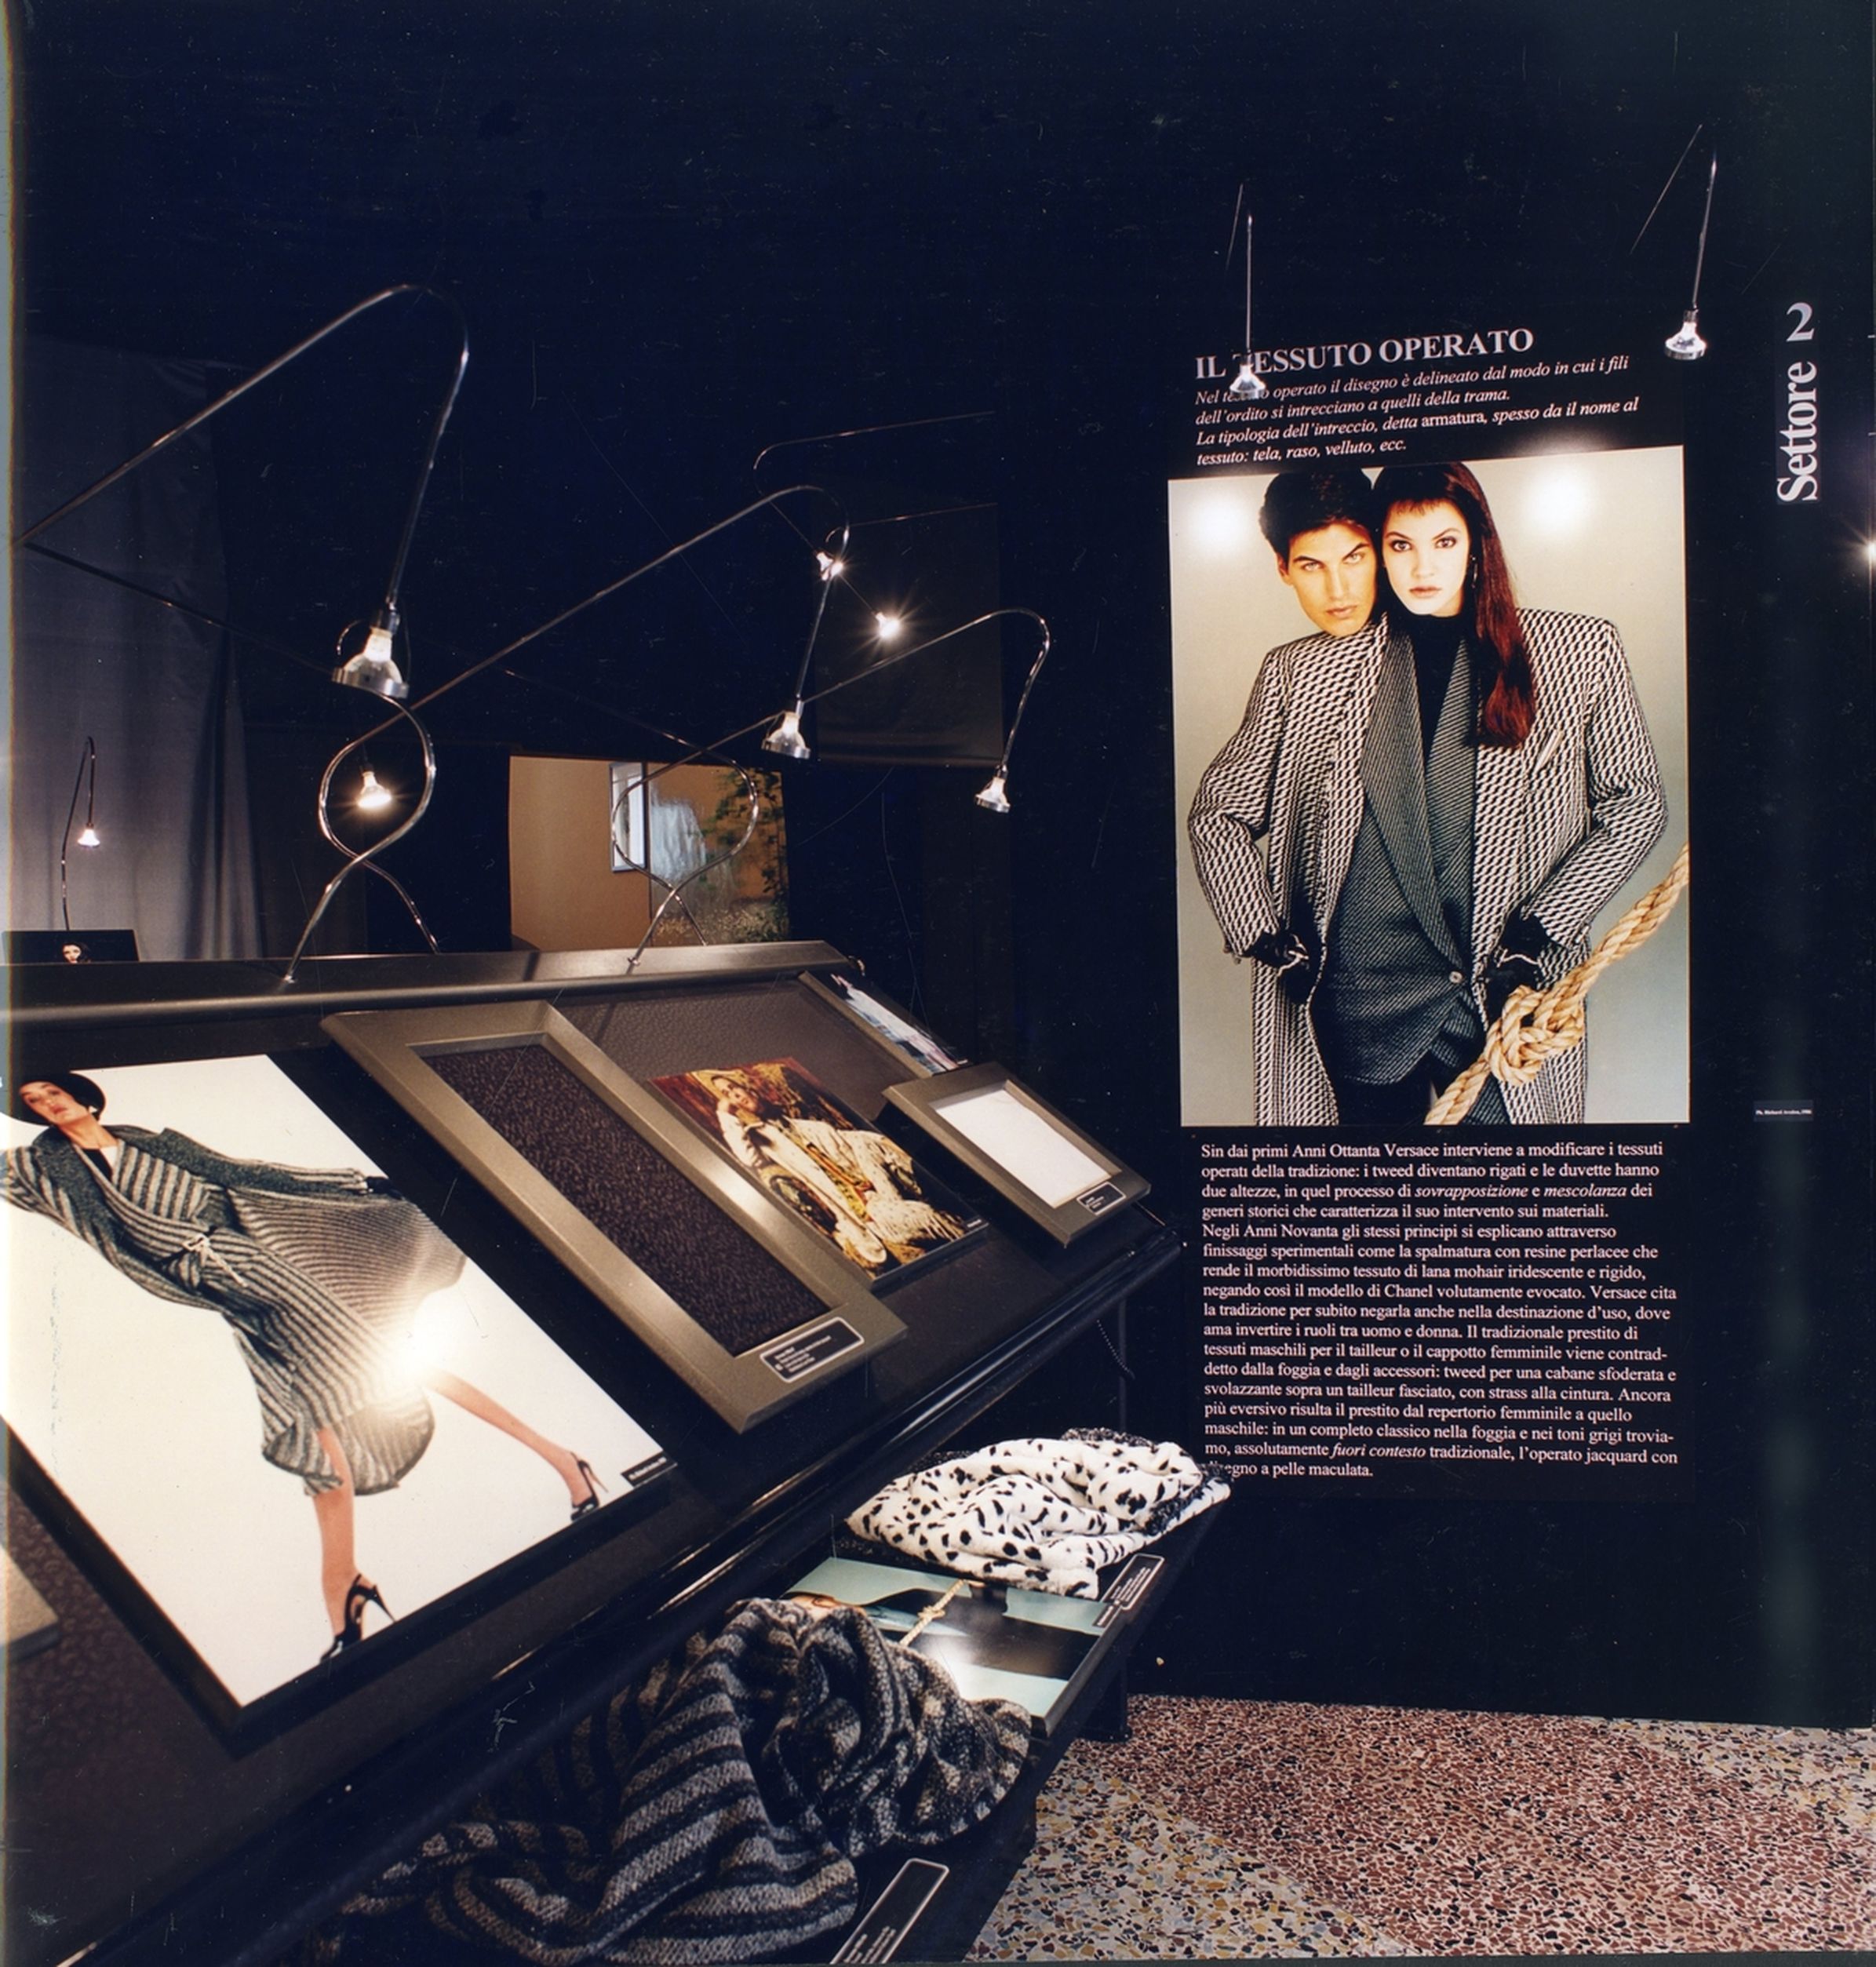 Emilio Pucci and Como, 1950-1980 - Exhibiting Fashion